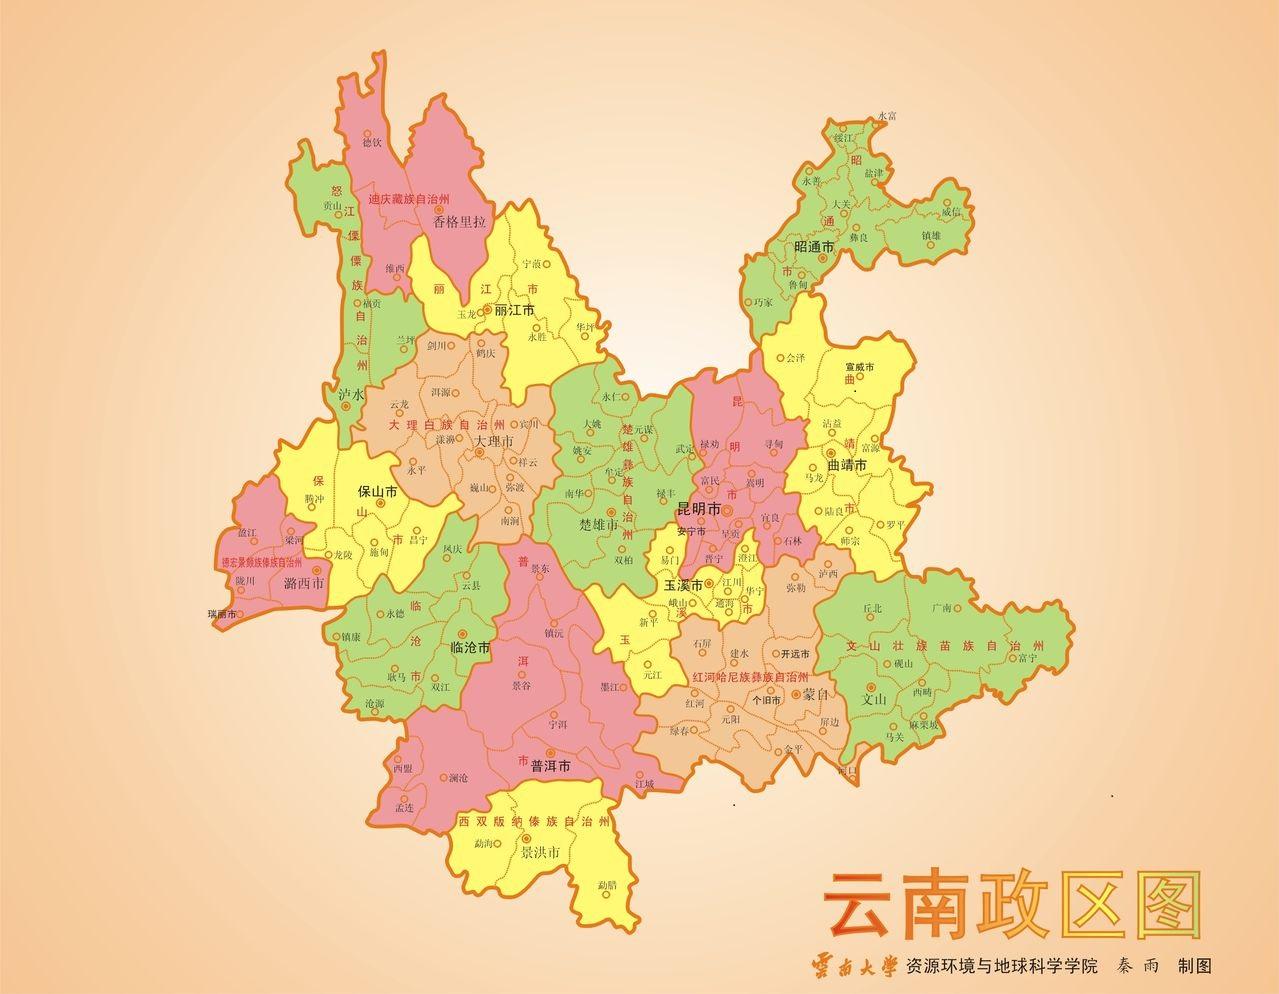 昆明在哪个省哪个地区,昆明在中国地图的什么位置